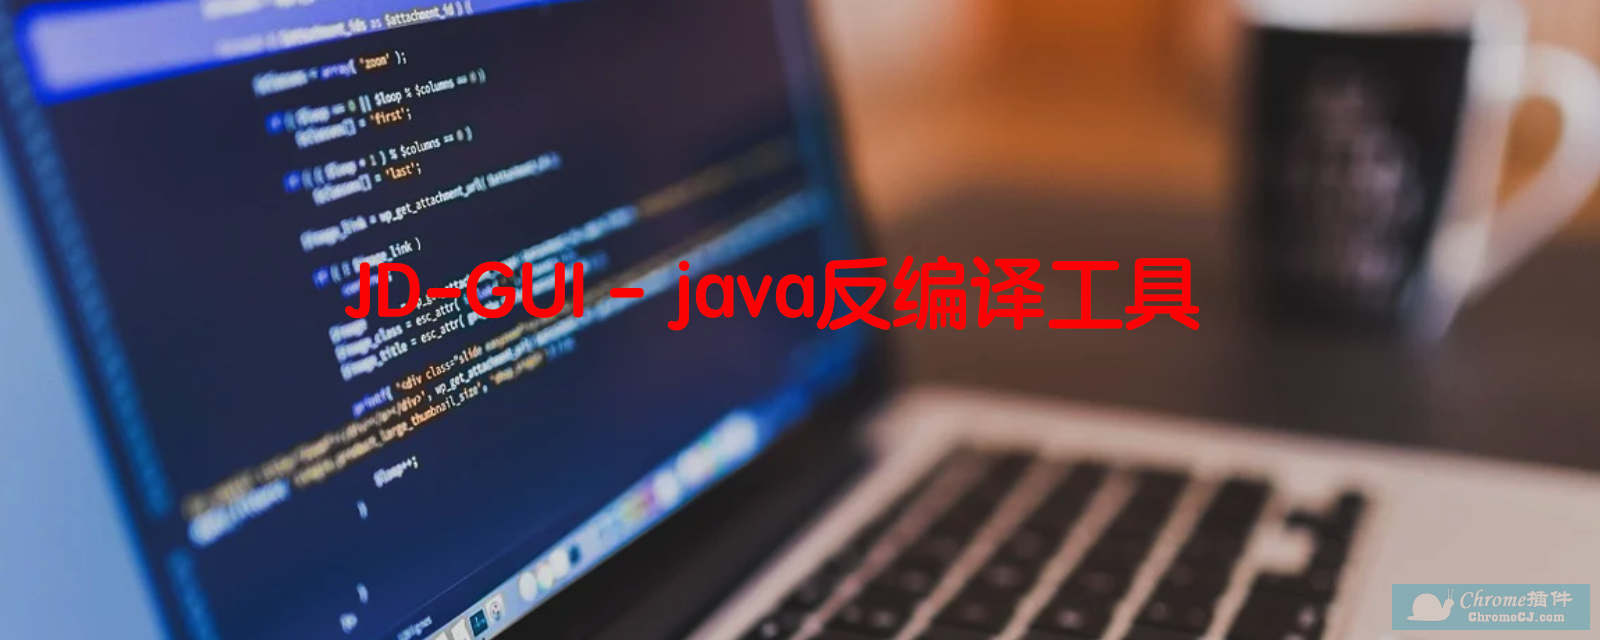 JD-GUI软件简介